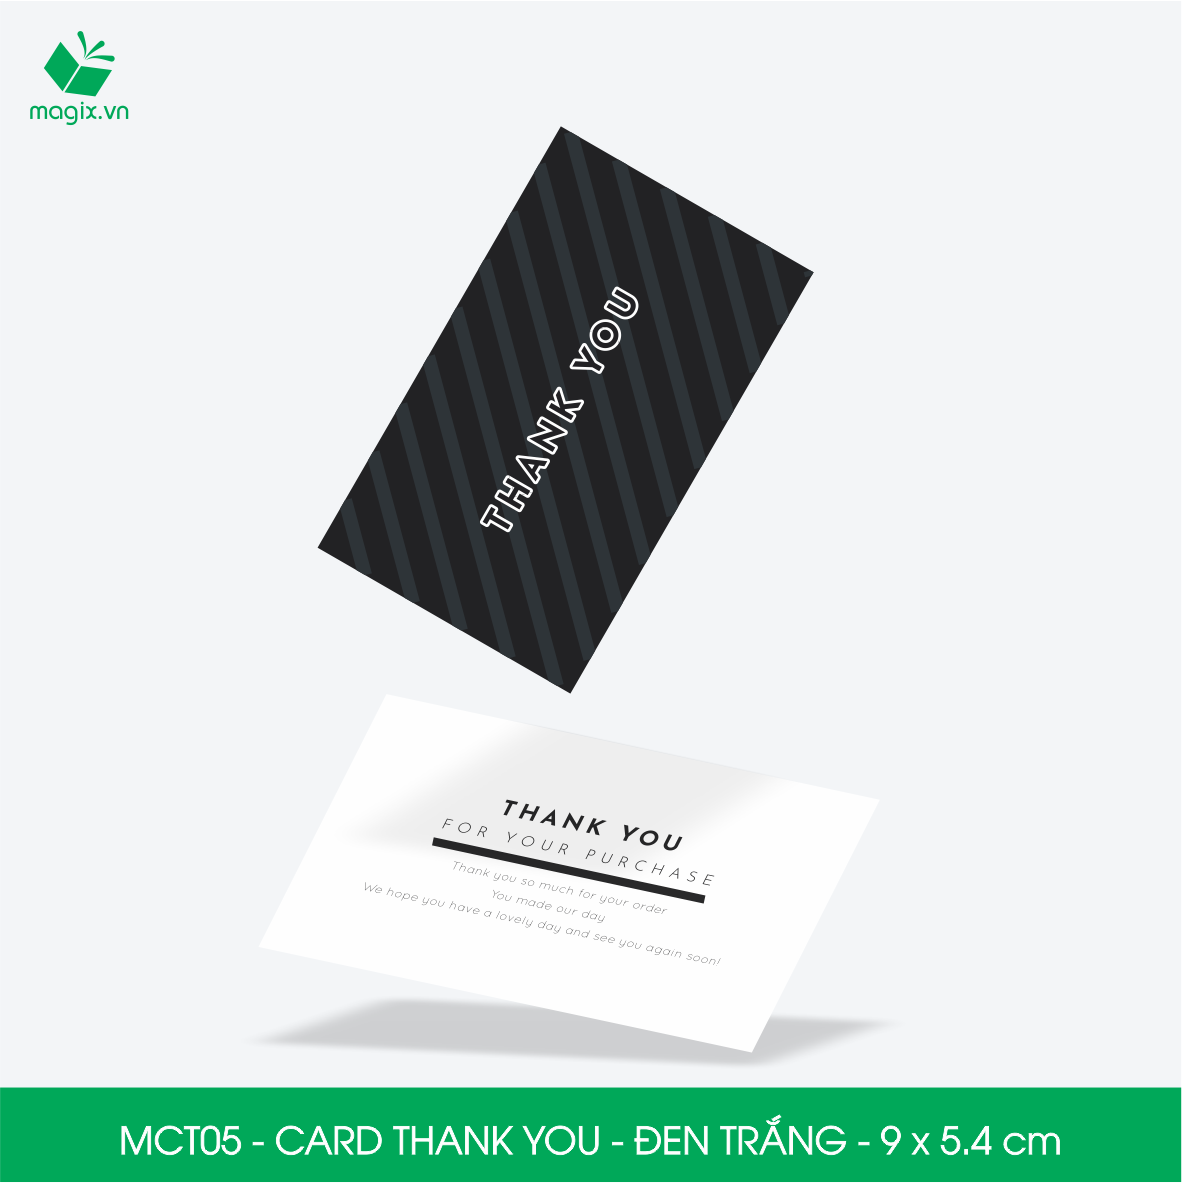 MCT05 - 9x5.4 cm - 50 Card Thank you, Thiệp cảm ơn khách hàng, card cám ơn cứng cáp sang trọng